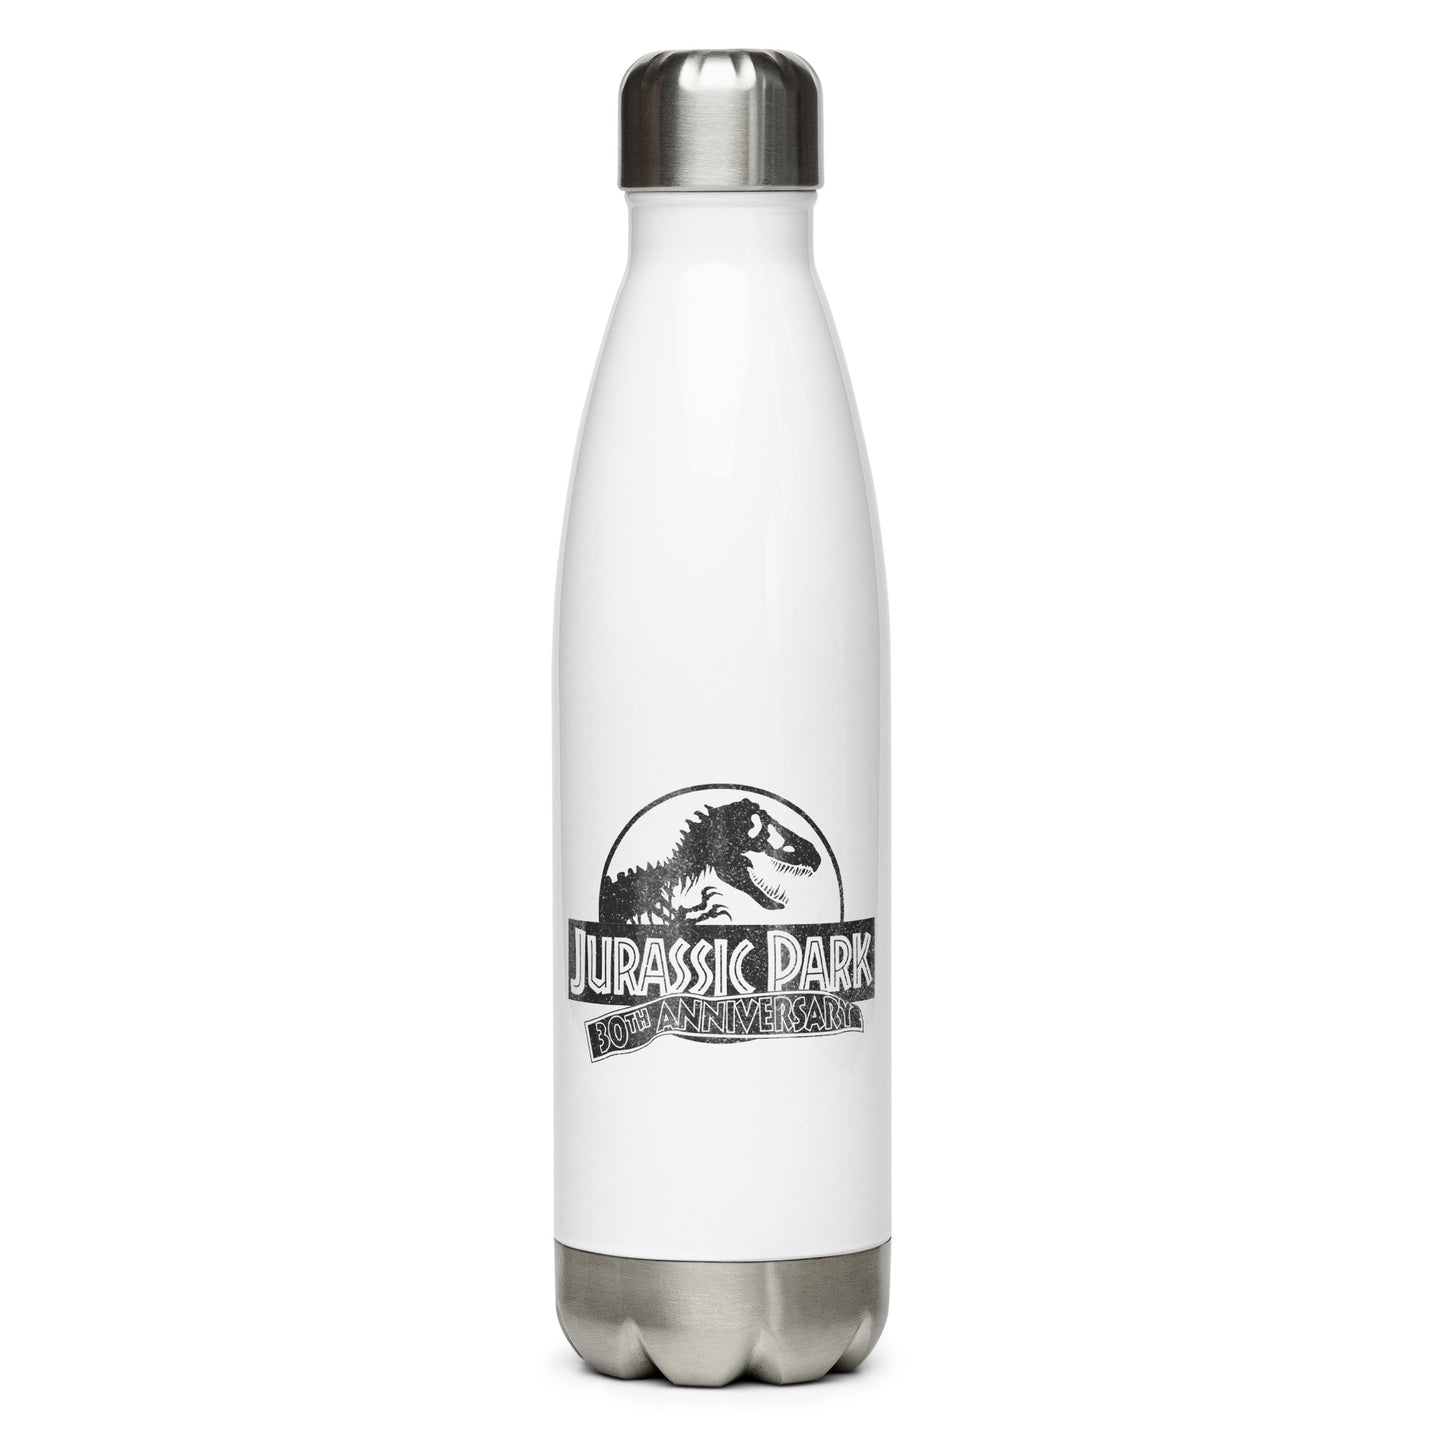 Jurassic Park 30th Anniversary Hazardous Waste Water Bottle